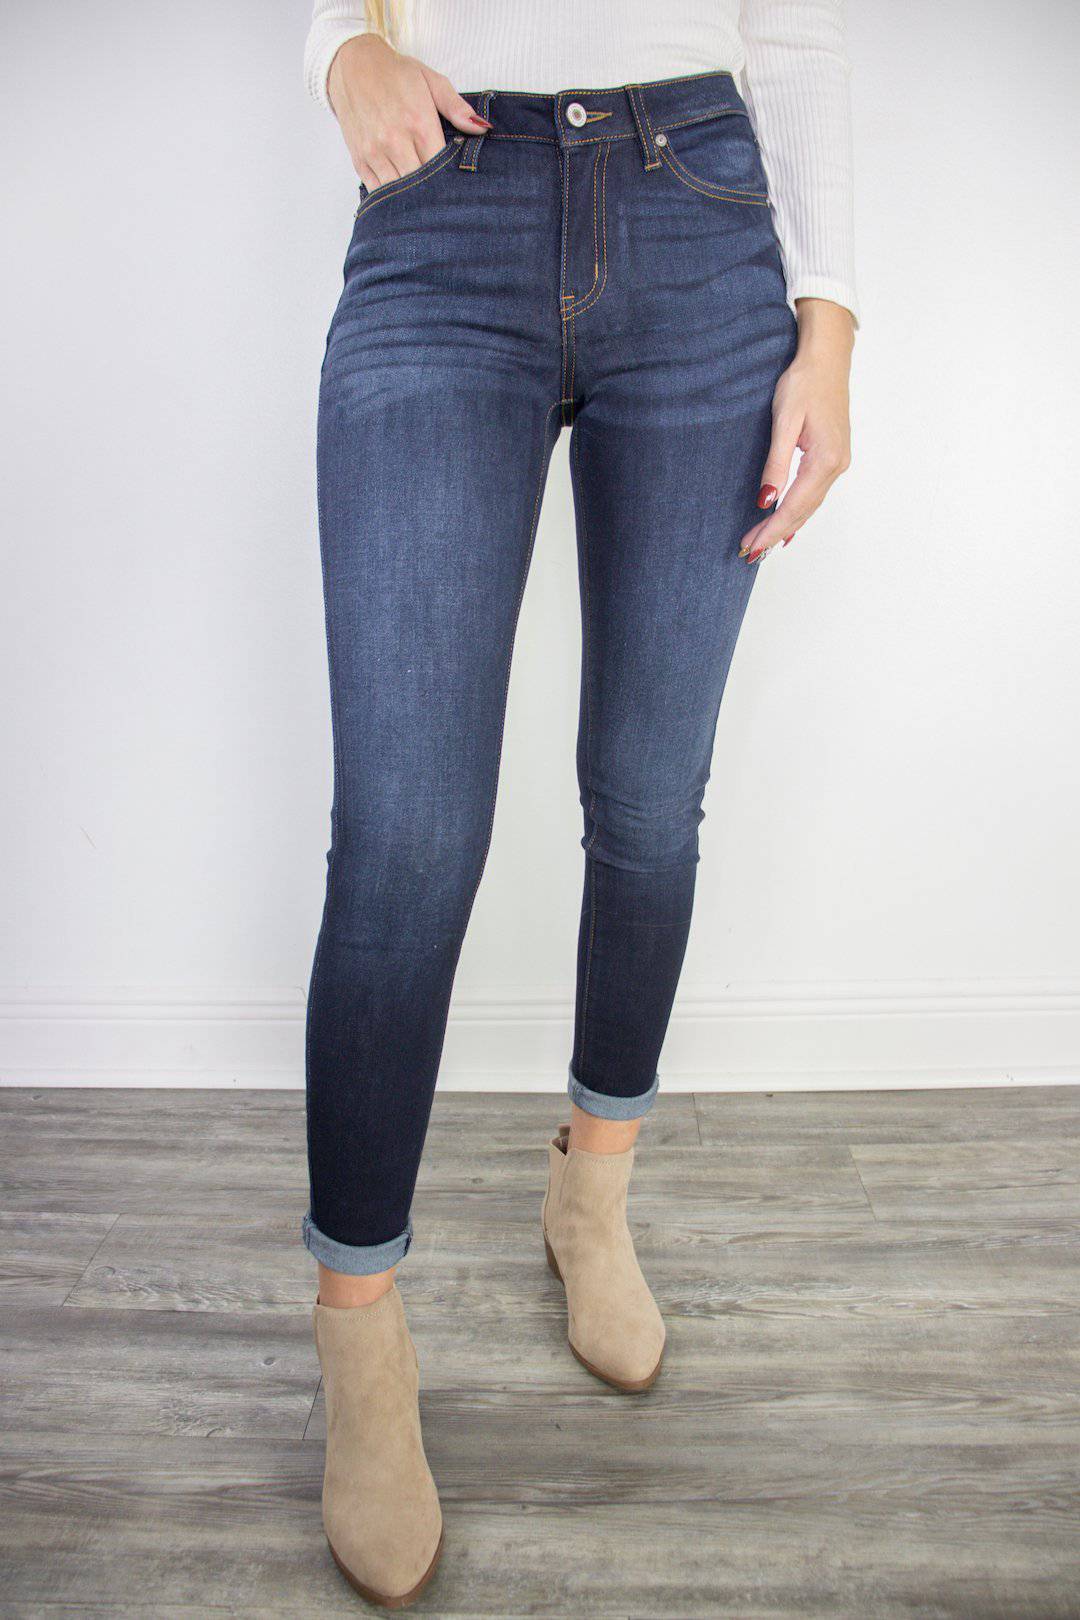 KanCan Dark Super Skinny Jeans - Select Trends Boutique